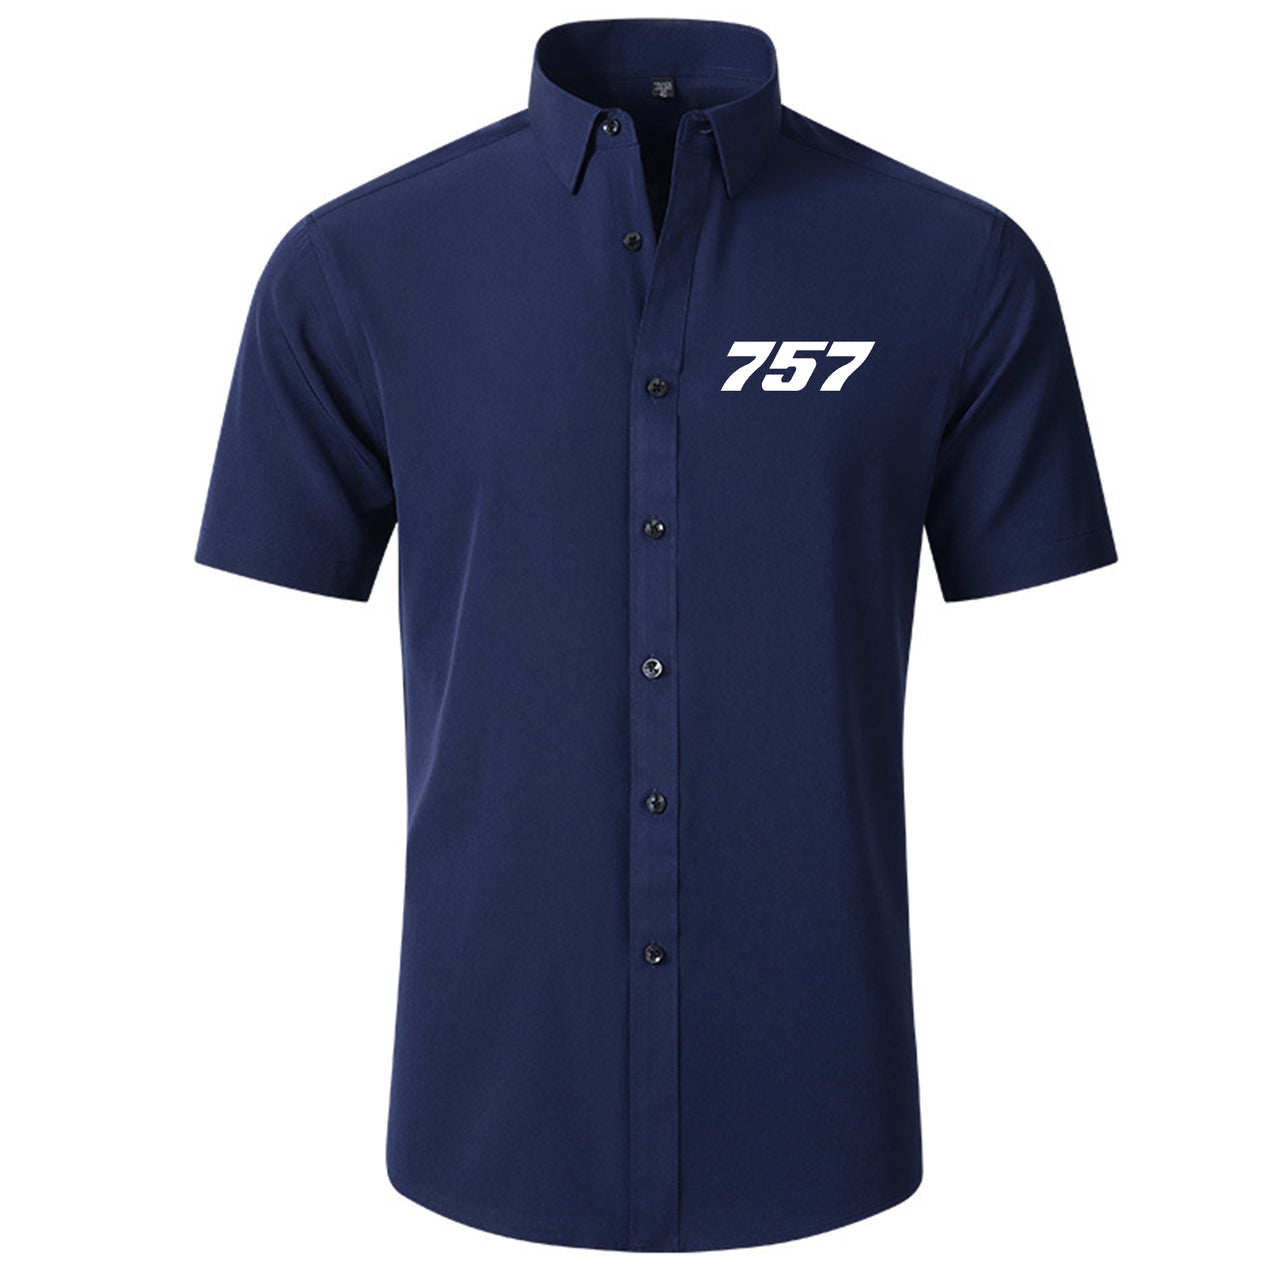 757 Flat Text Designed Short Sleeve Shirts